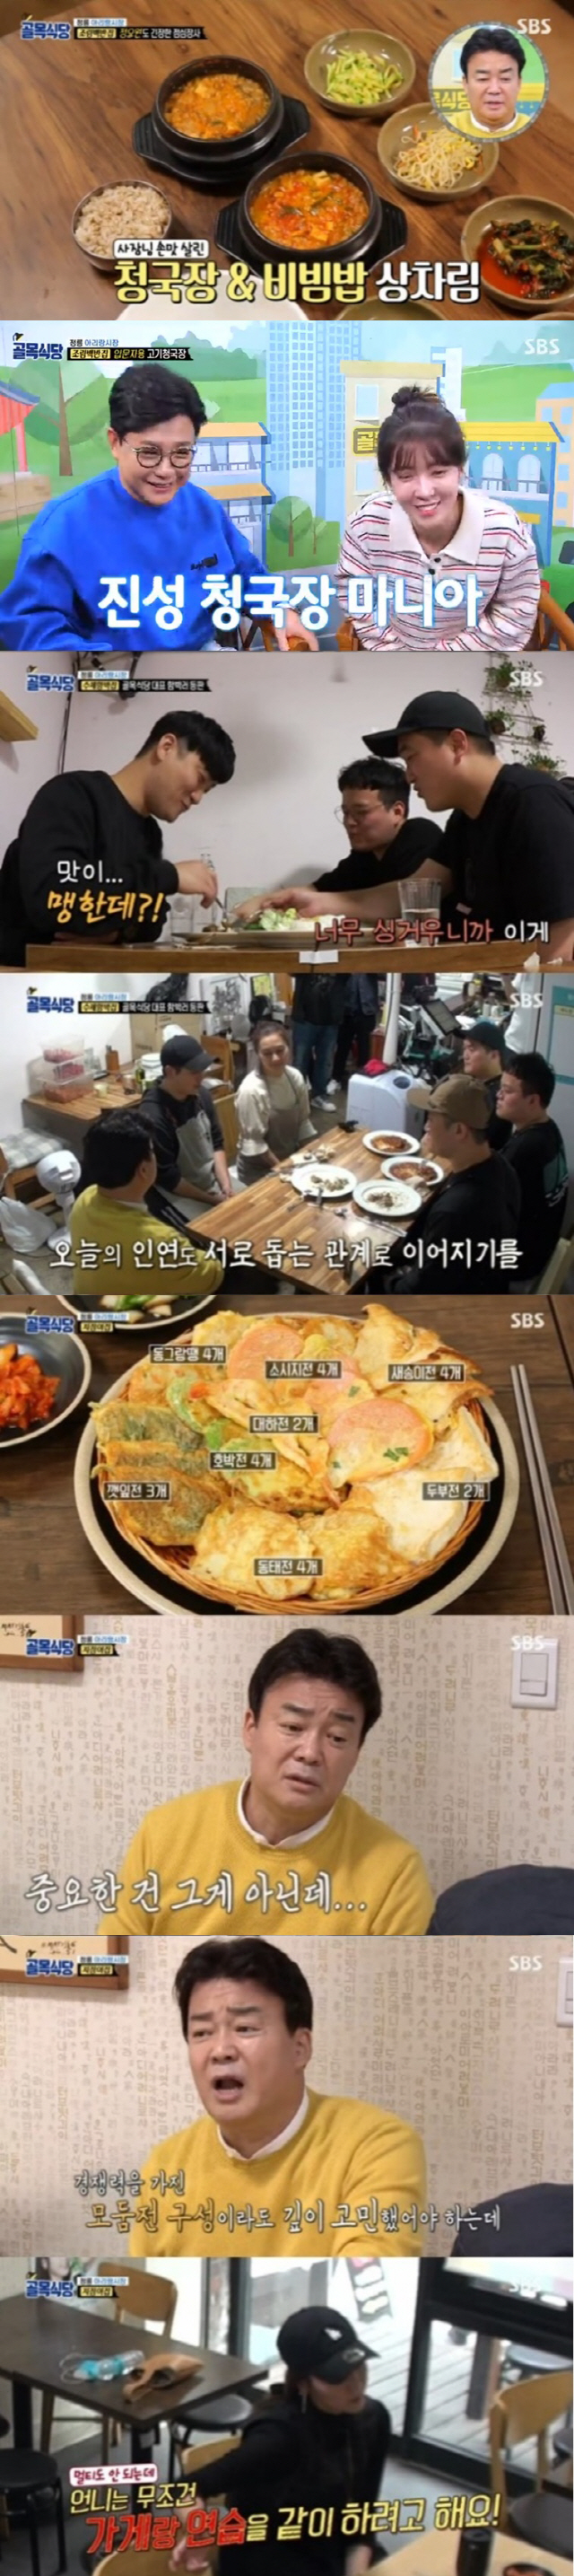 '골목식당' 백종원, 지짐이집의 험난한 솔루션 예고..'최고 시청률 7.2%'